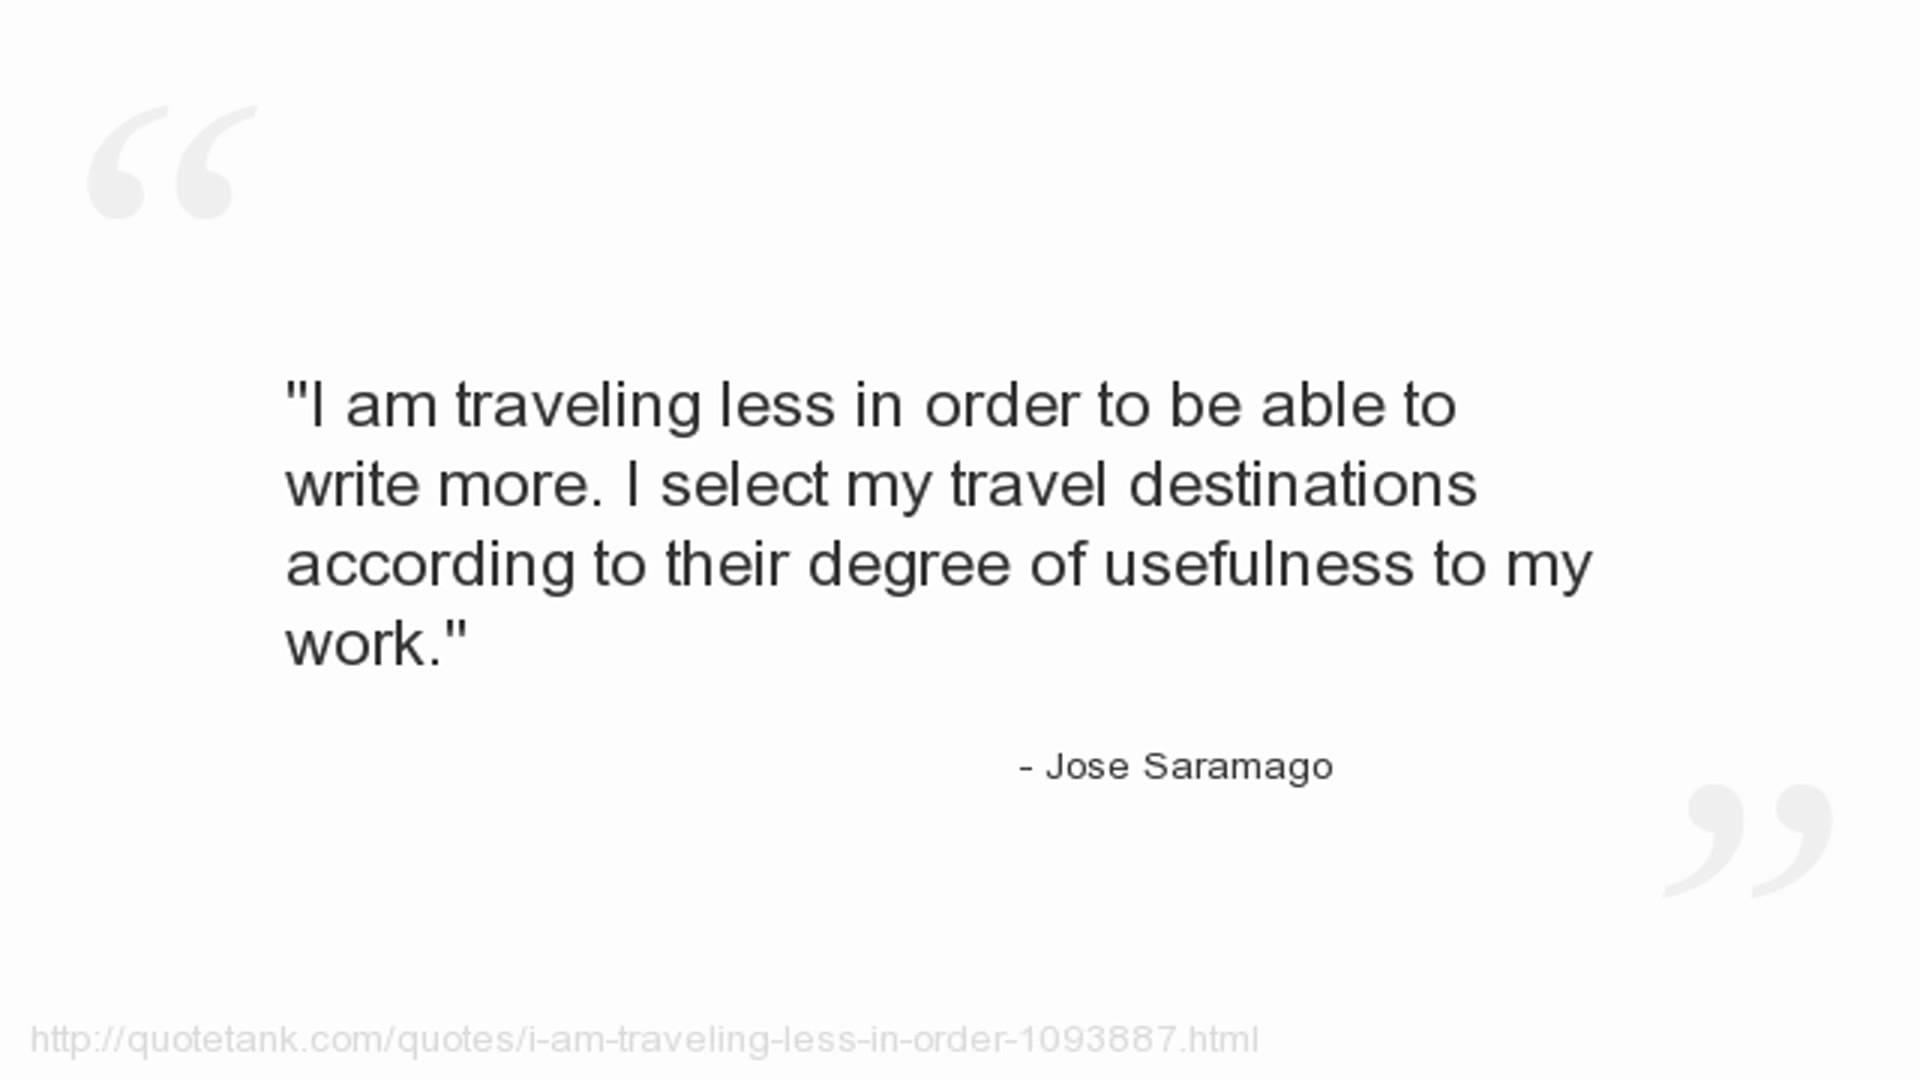 Jose Saramago's quote